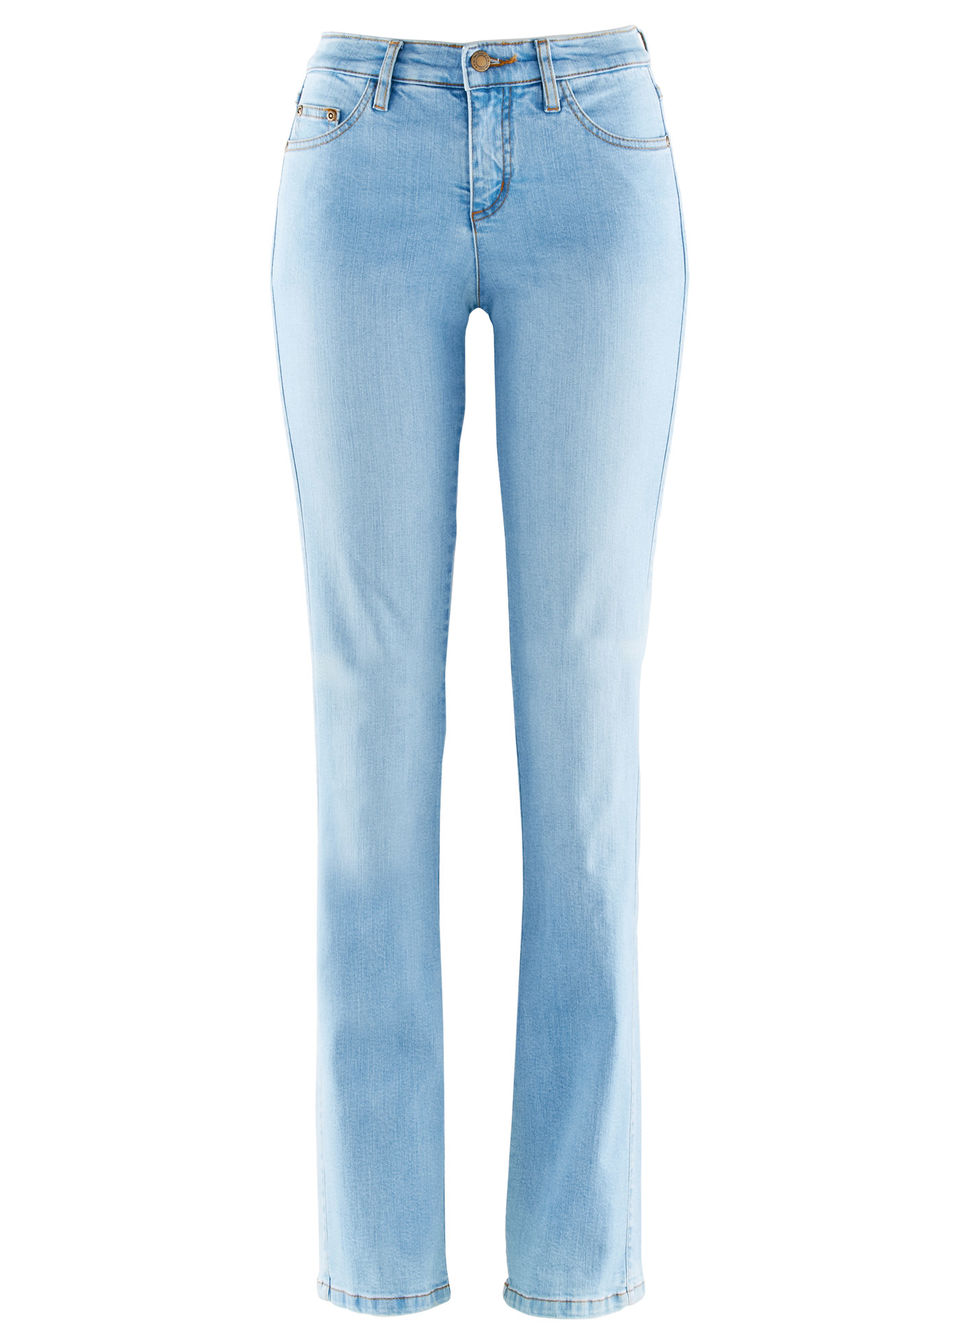 Хит продаж: стройнящие джинсы-стретч STRAIGHT от bonprix